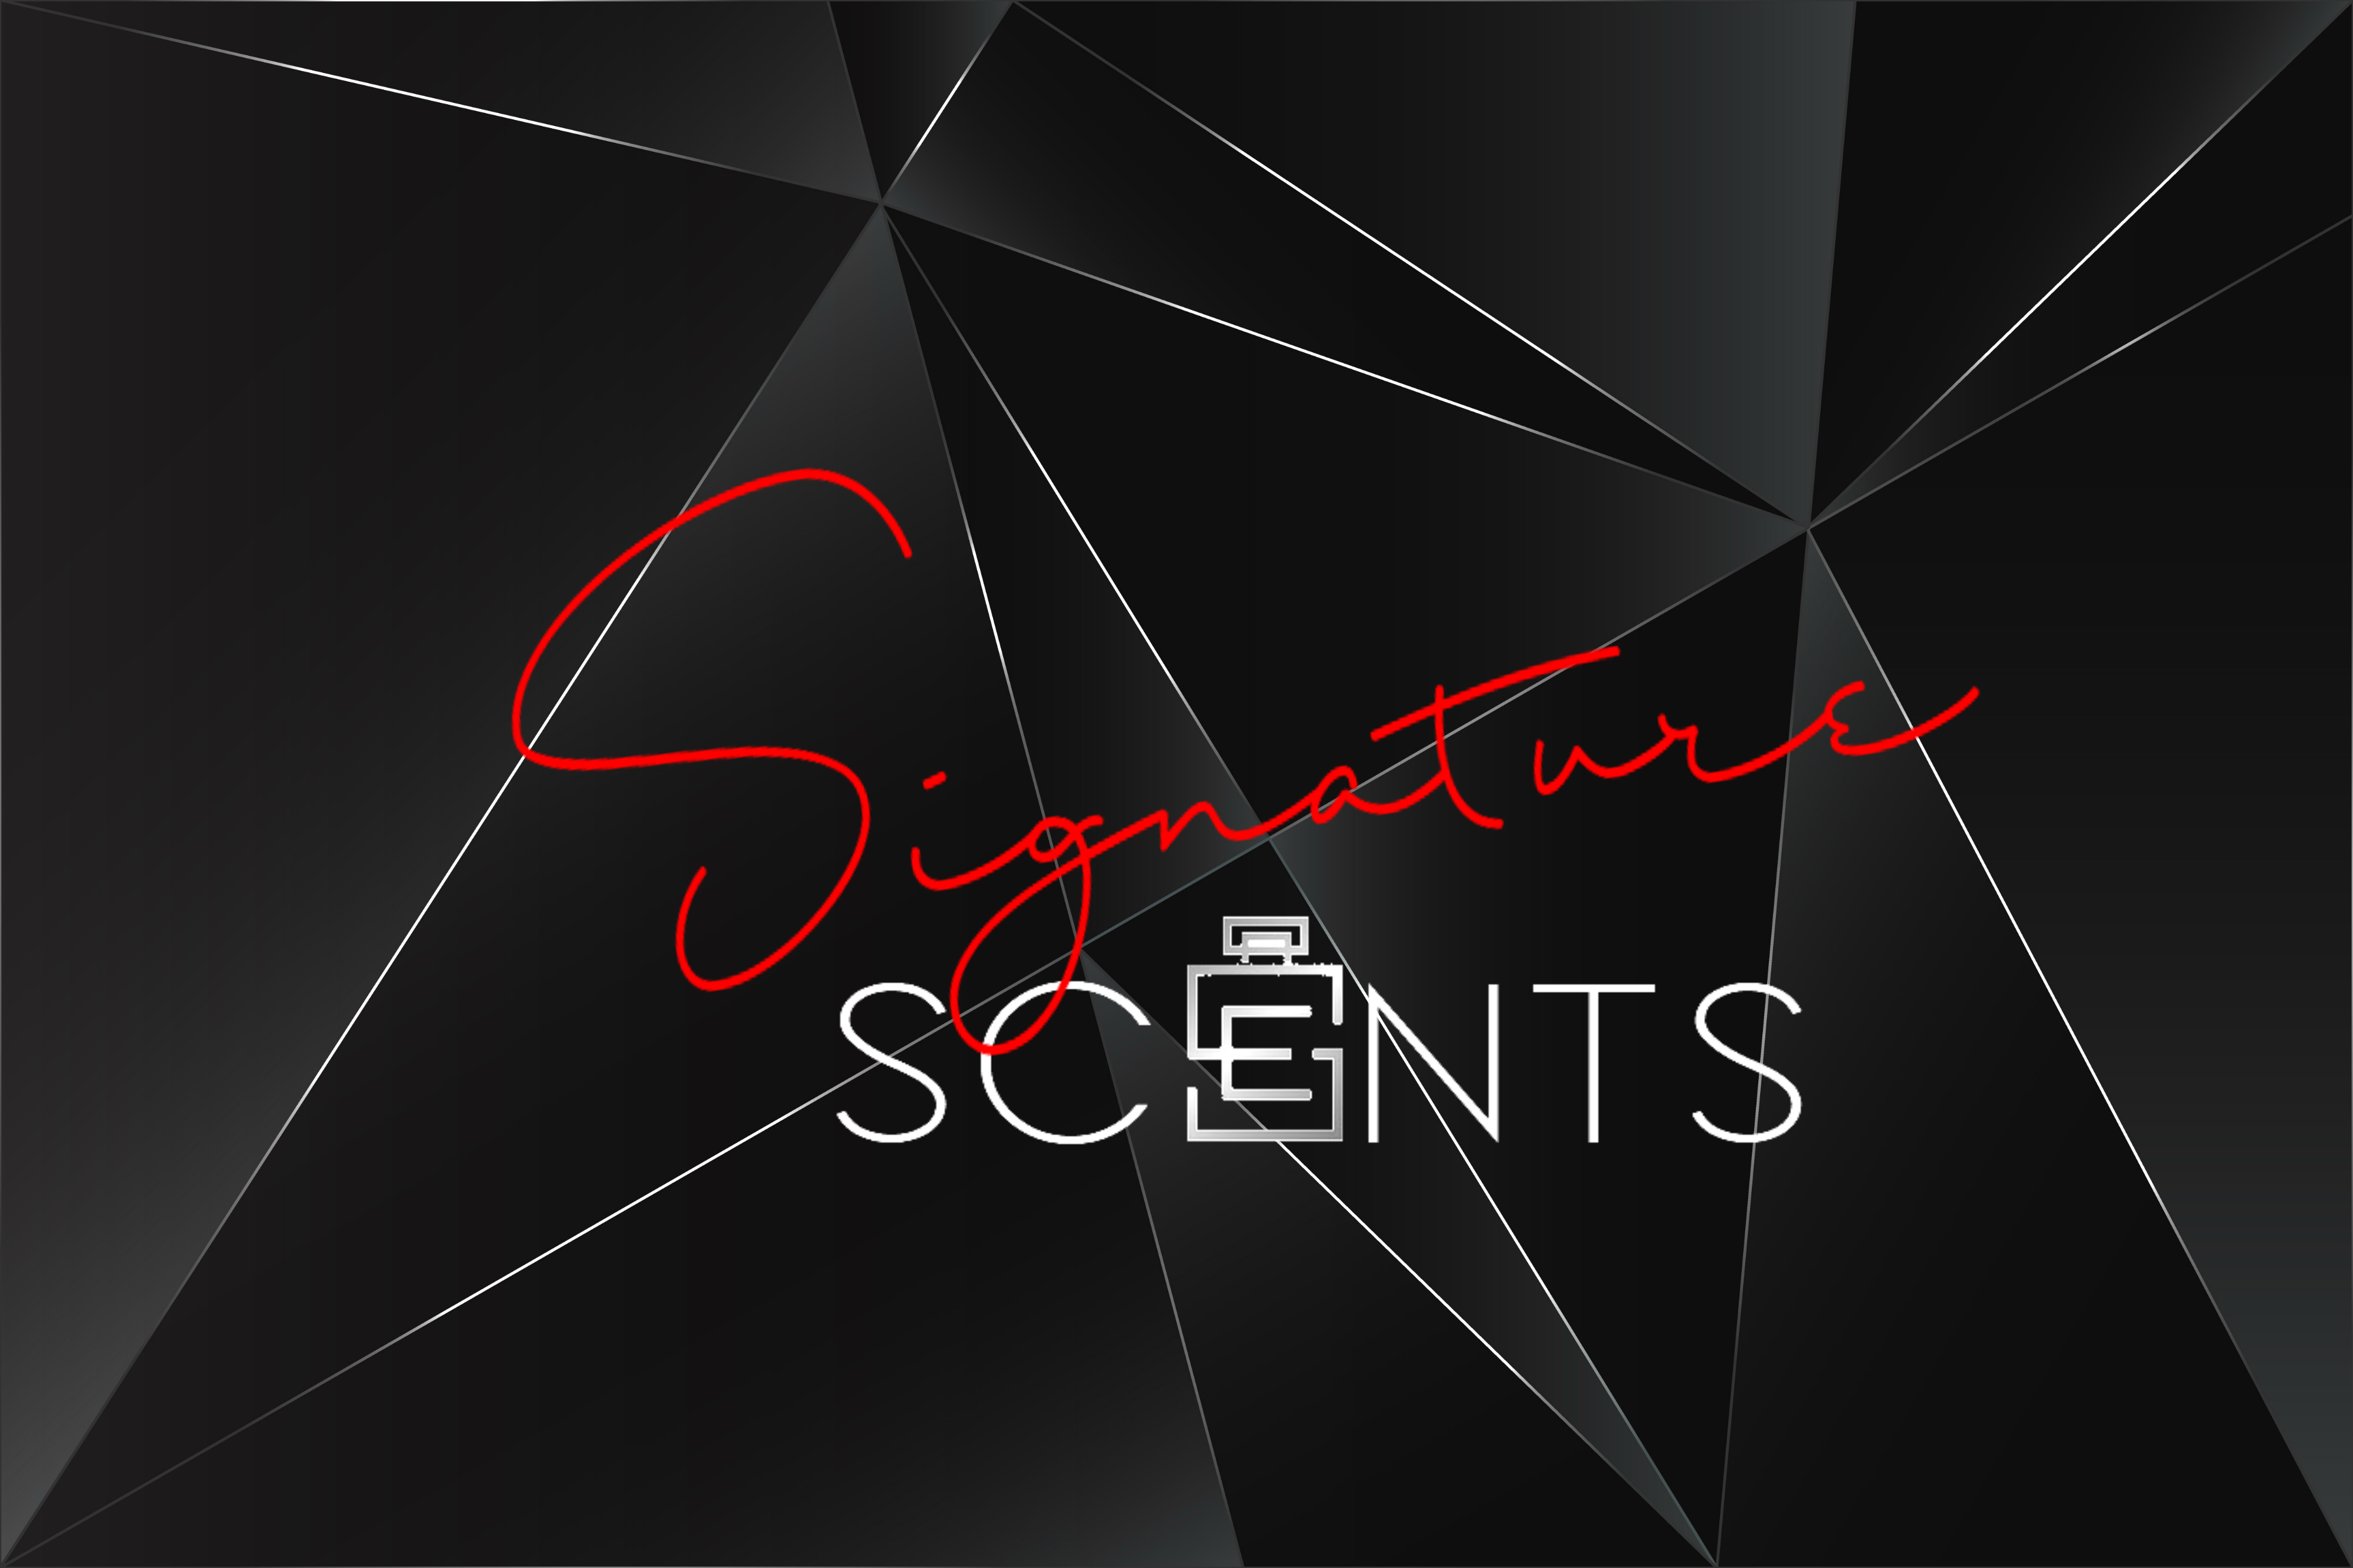 Signature scents